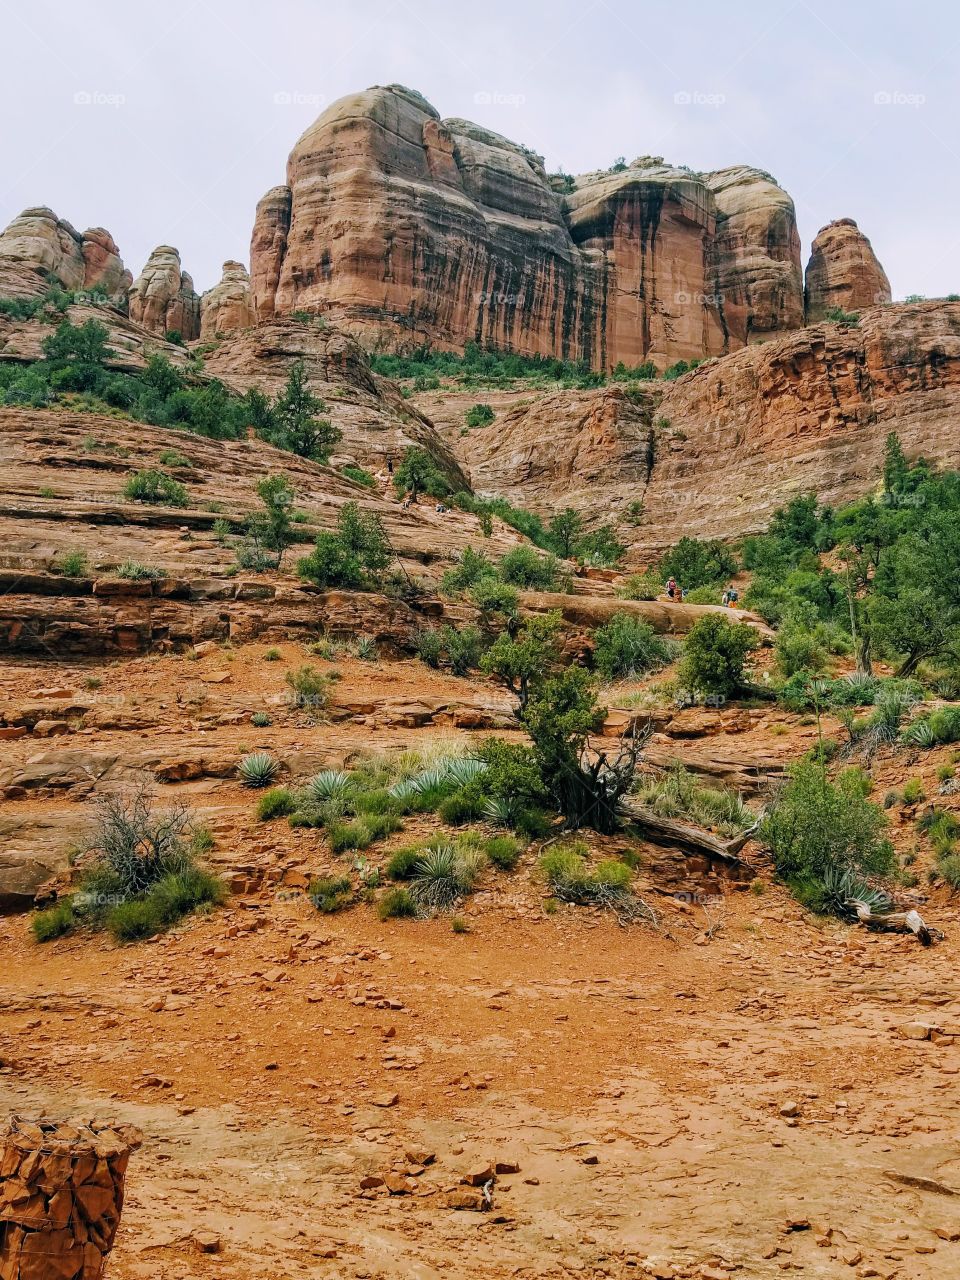 Beautiful hike in Cathedral Rock Arizona 